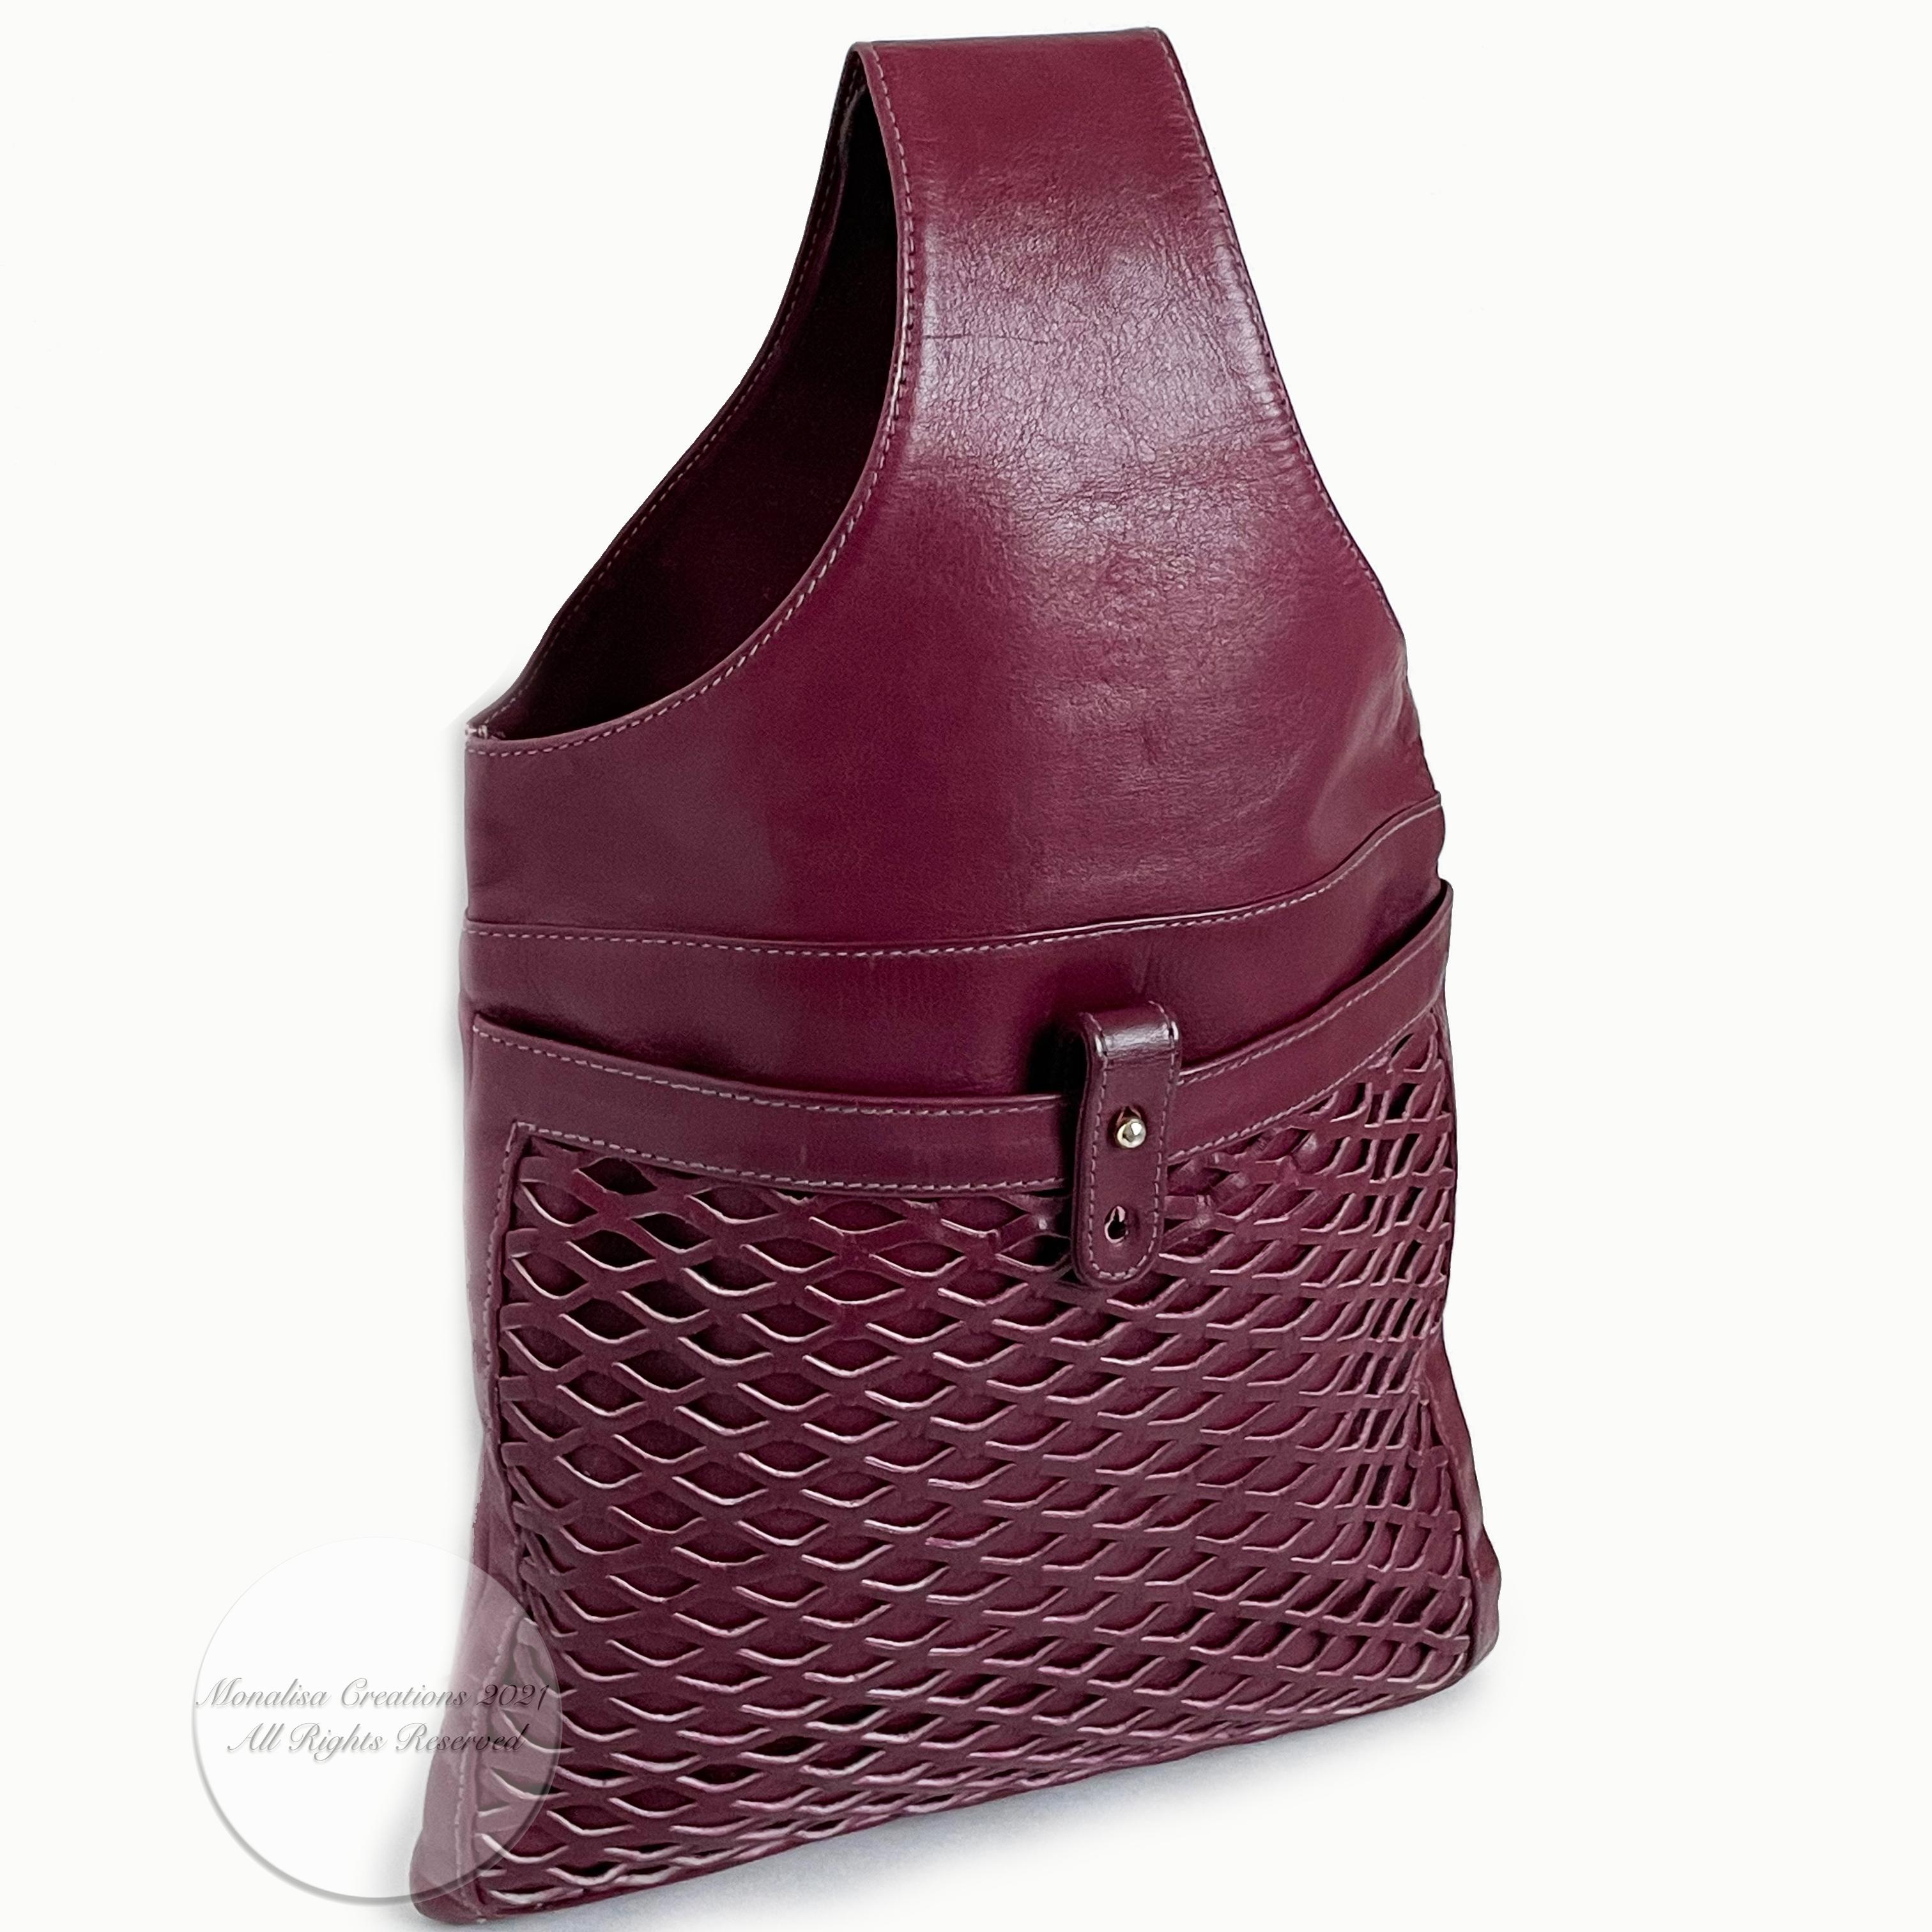 Vintage Bonnie Cashin Burgundy Leather Sling Bag Tote Basket Weave Pocket Rare 1